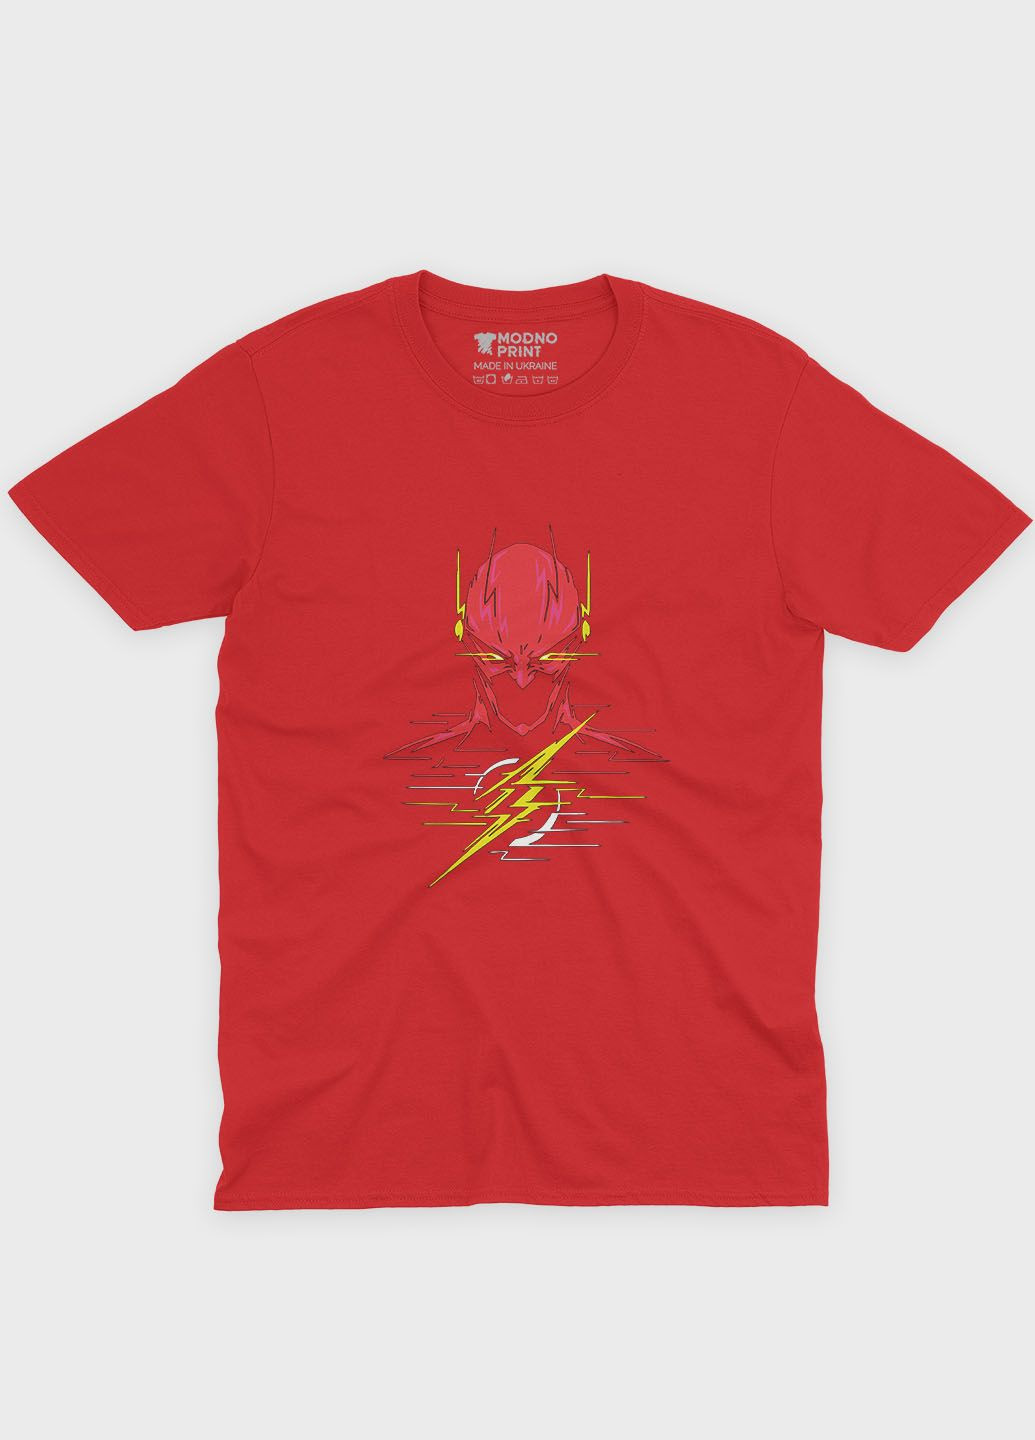 Красная демисезонная футболка для девочки с принтом супергероя - флэш (ts001-1-sre-006-010-005-g) Modno